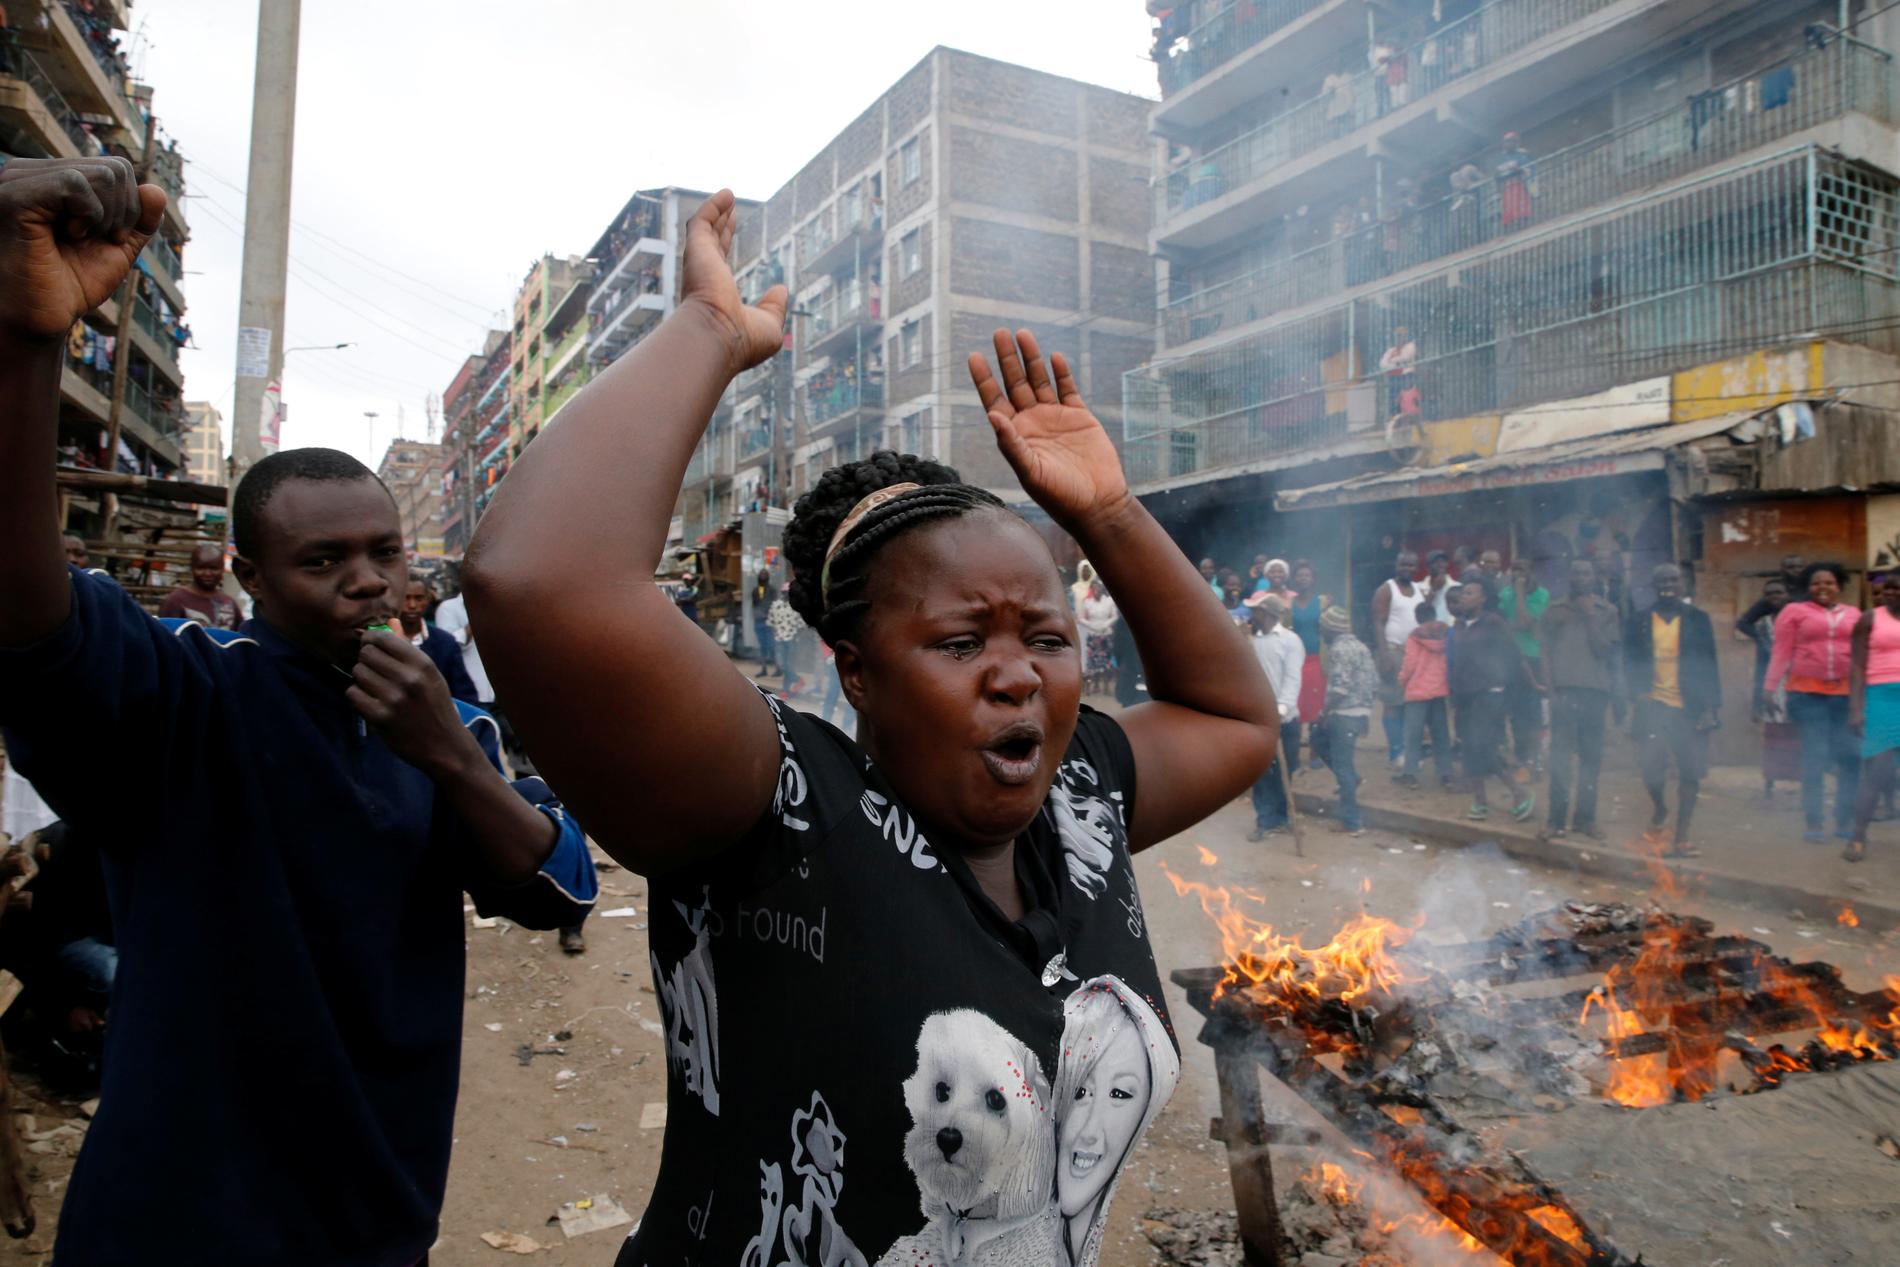 Oroligheter i Kenya efter uppgifter om falskt valresultat